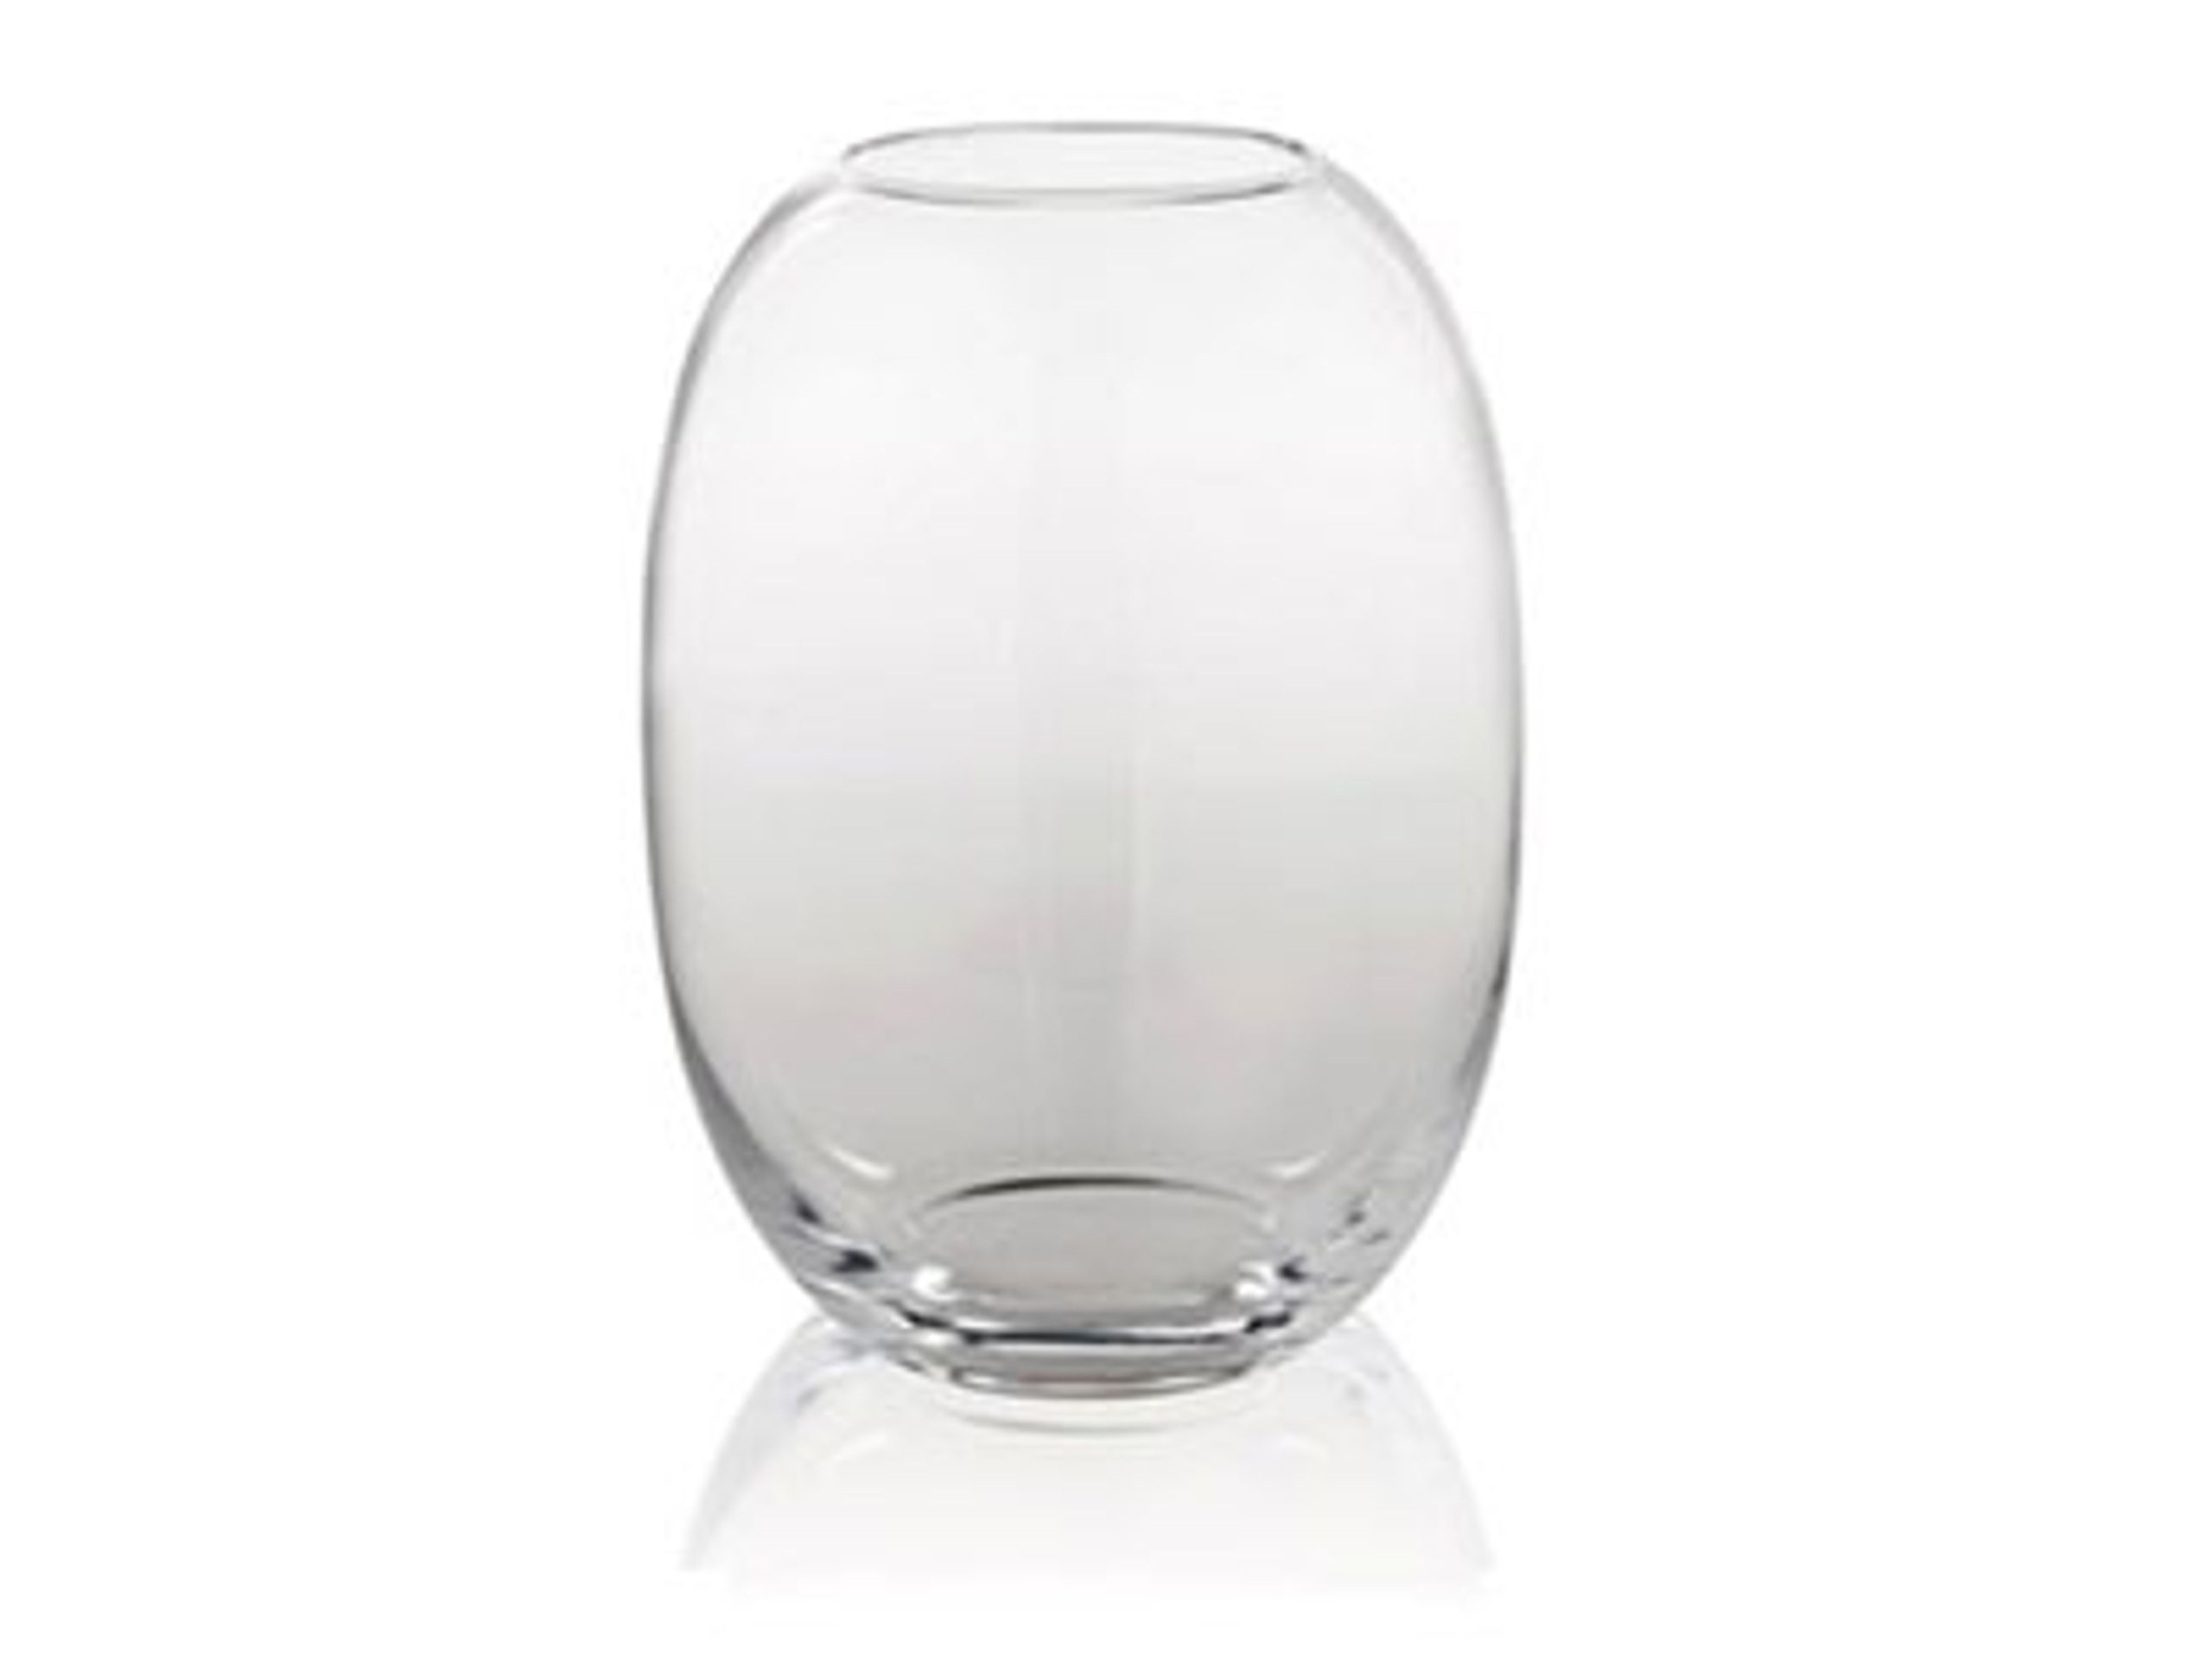 Piet Hein - Vase - Vase Glas  - Vase glas 10 cm - KLAR